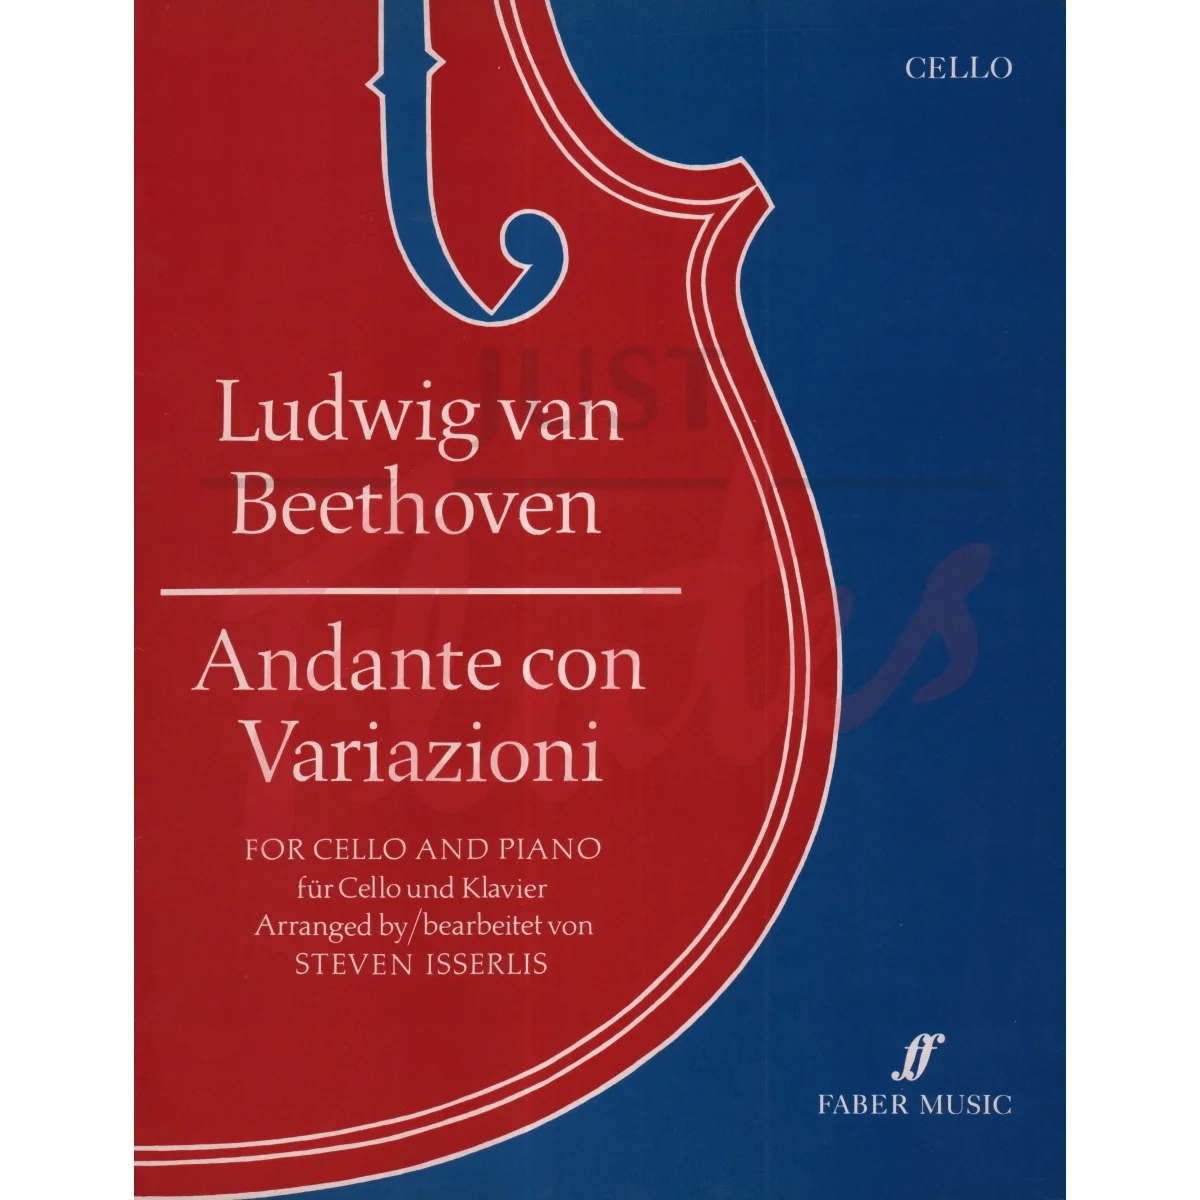 Andante Con Variazioni for Cello and Piano